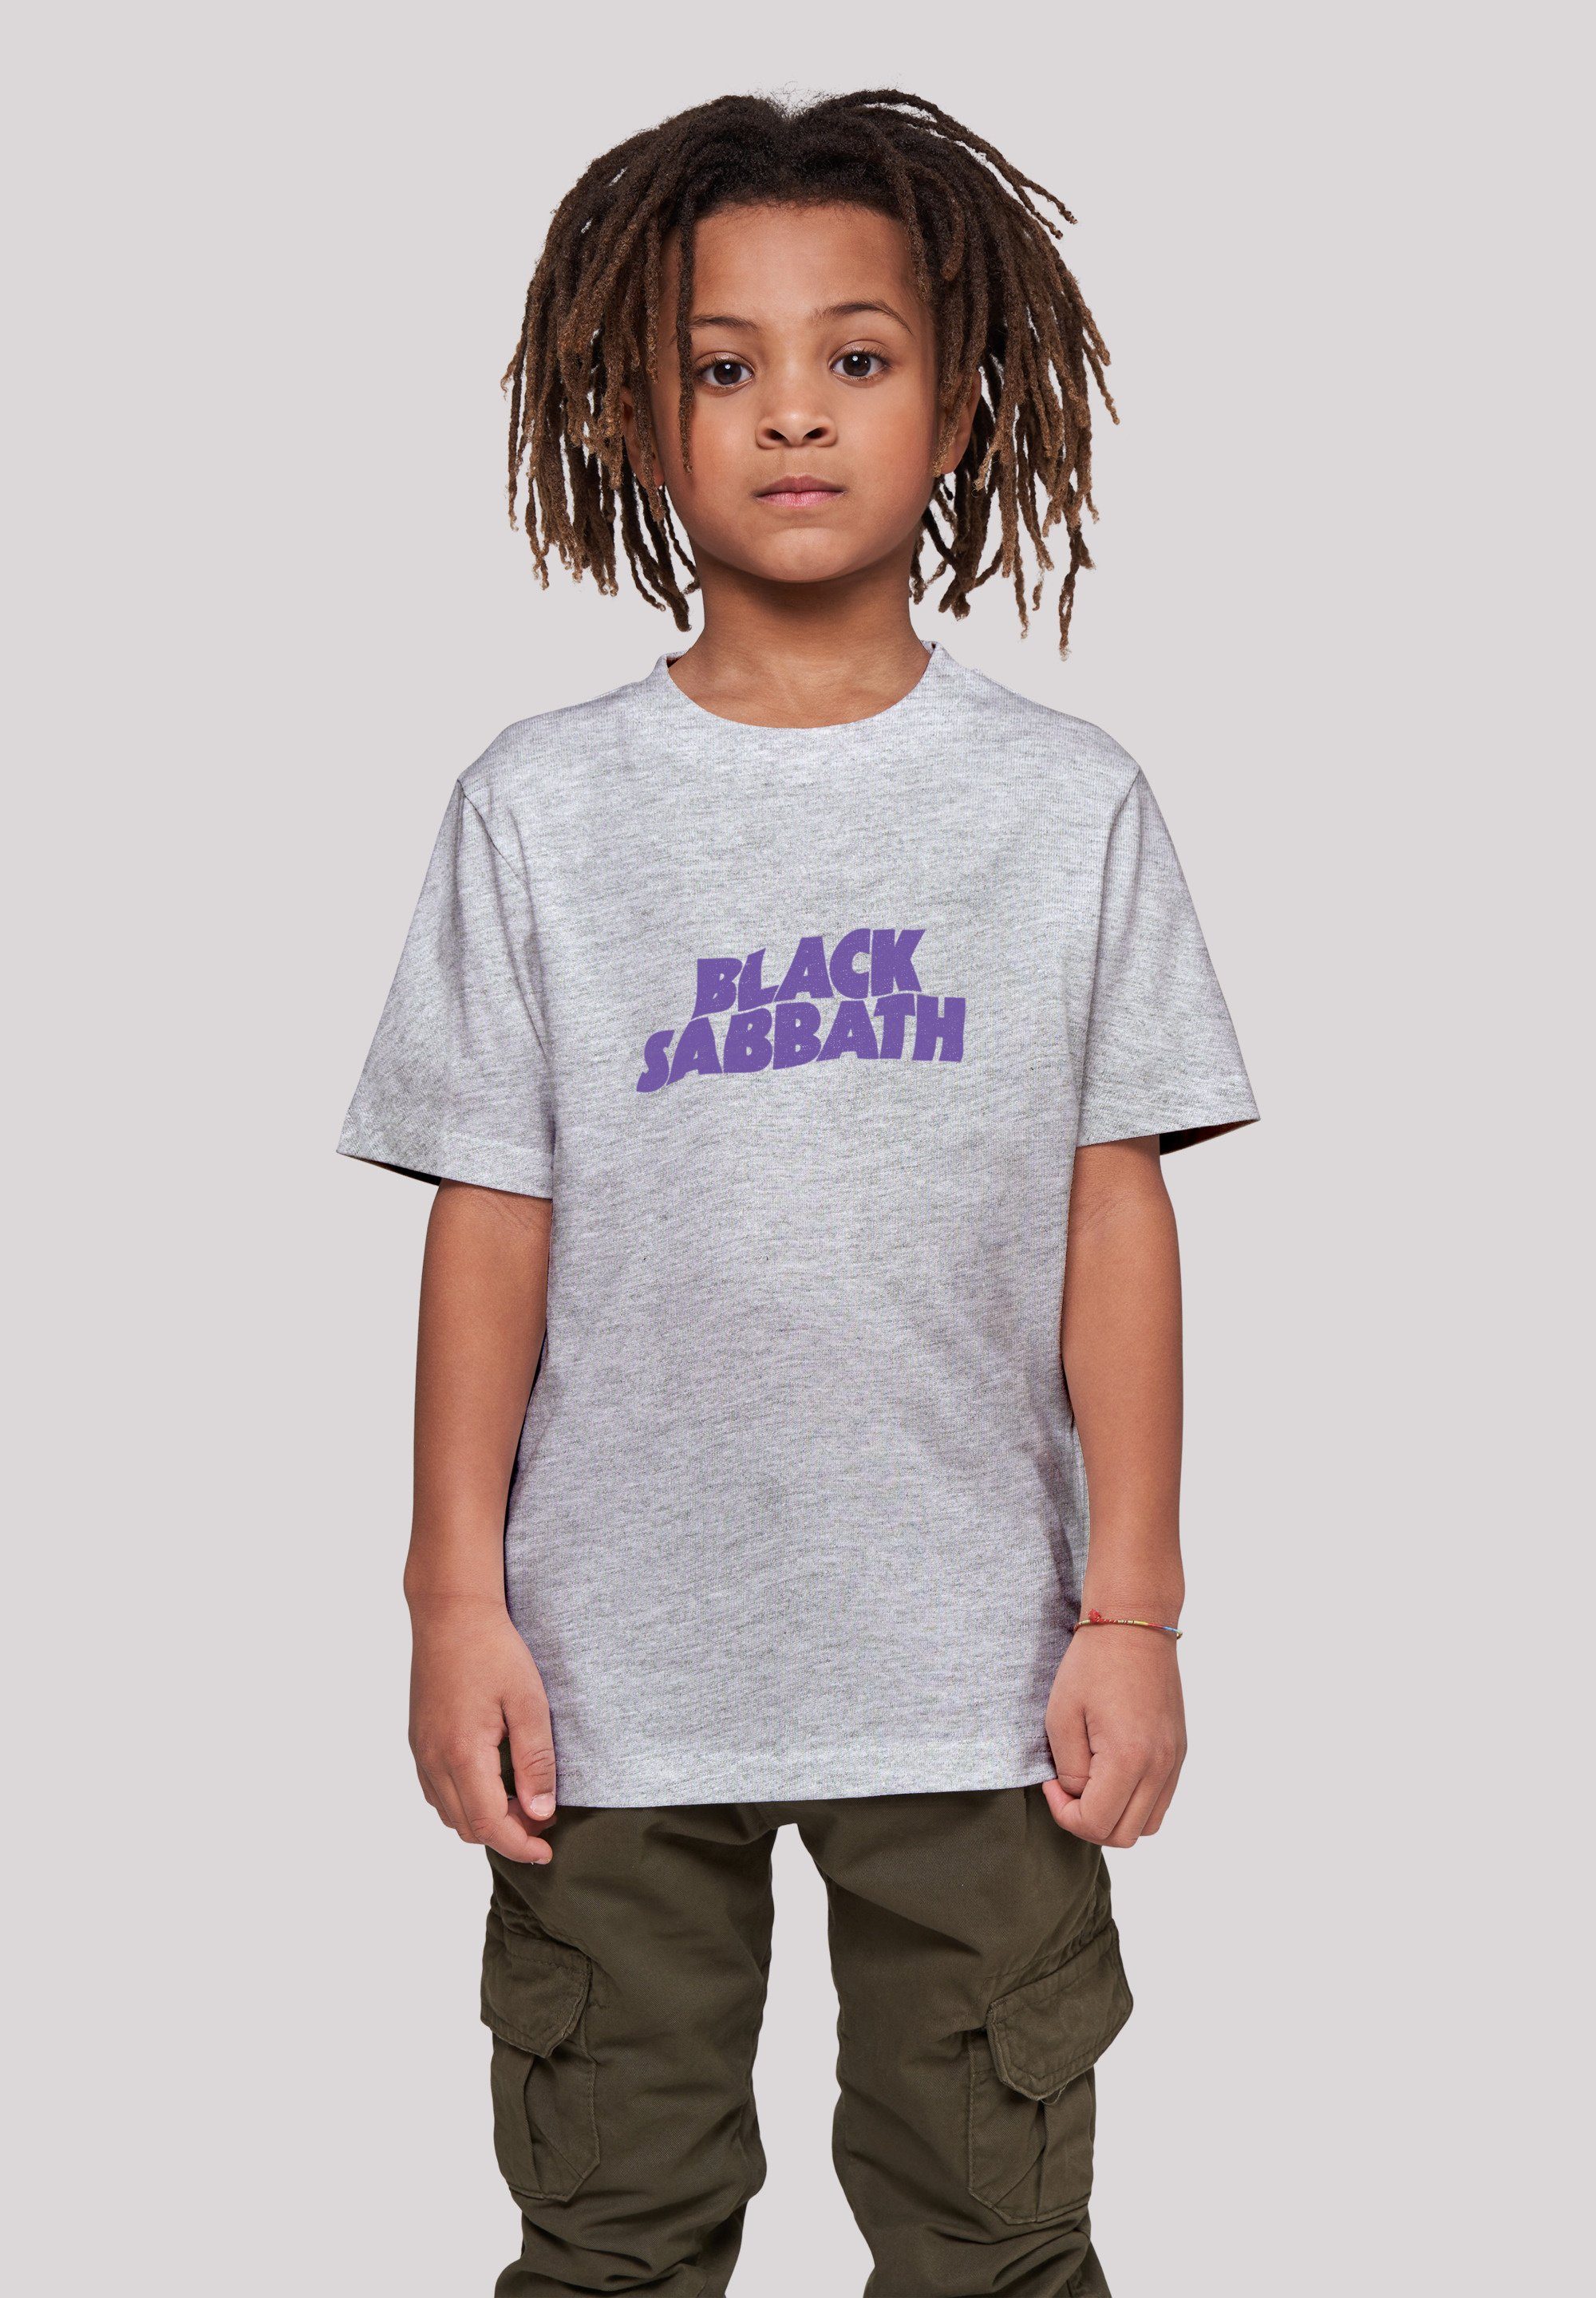 F4NT4STIC T-Shirt Logo Sabbath Das Black Band 145/152 Model Metal Print, 145 und trägt groß Heavy ist Black Größe cm Wavy